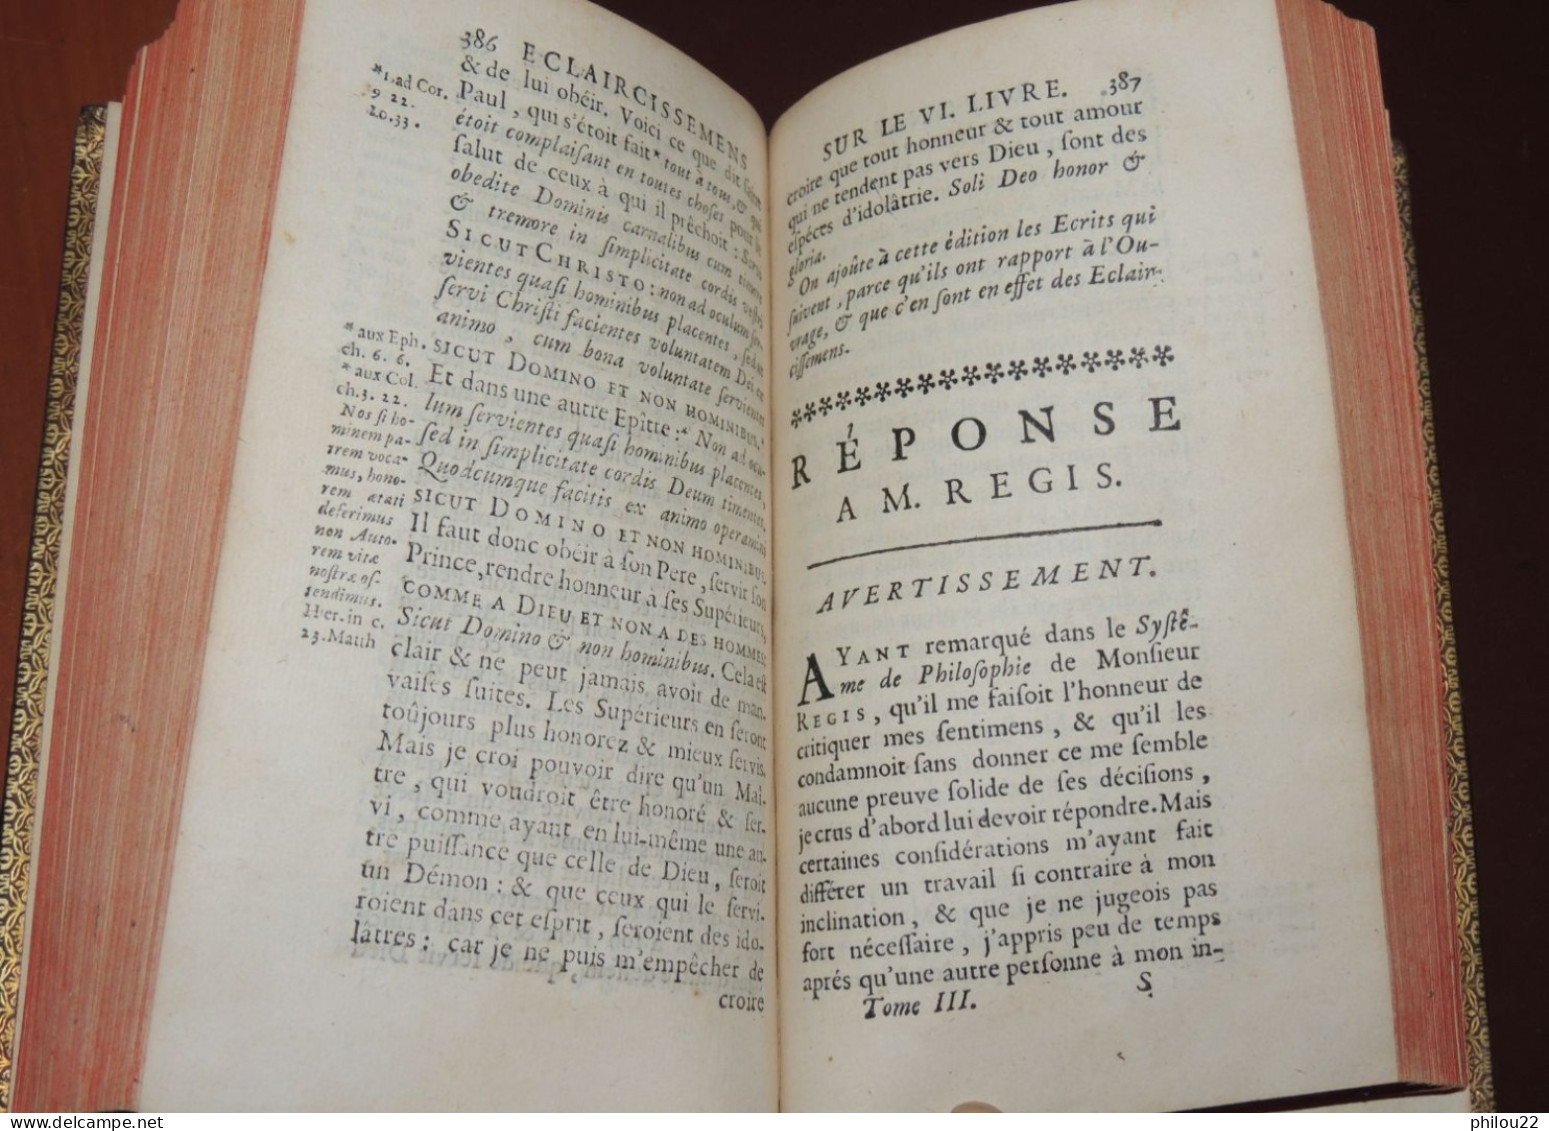 MALEBRANCHE  De la Recherche de la vérité... Philosophie  Théologie  3 vol. 1700